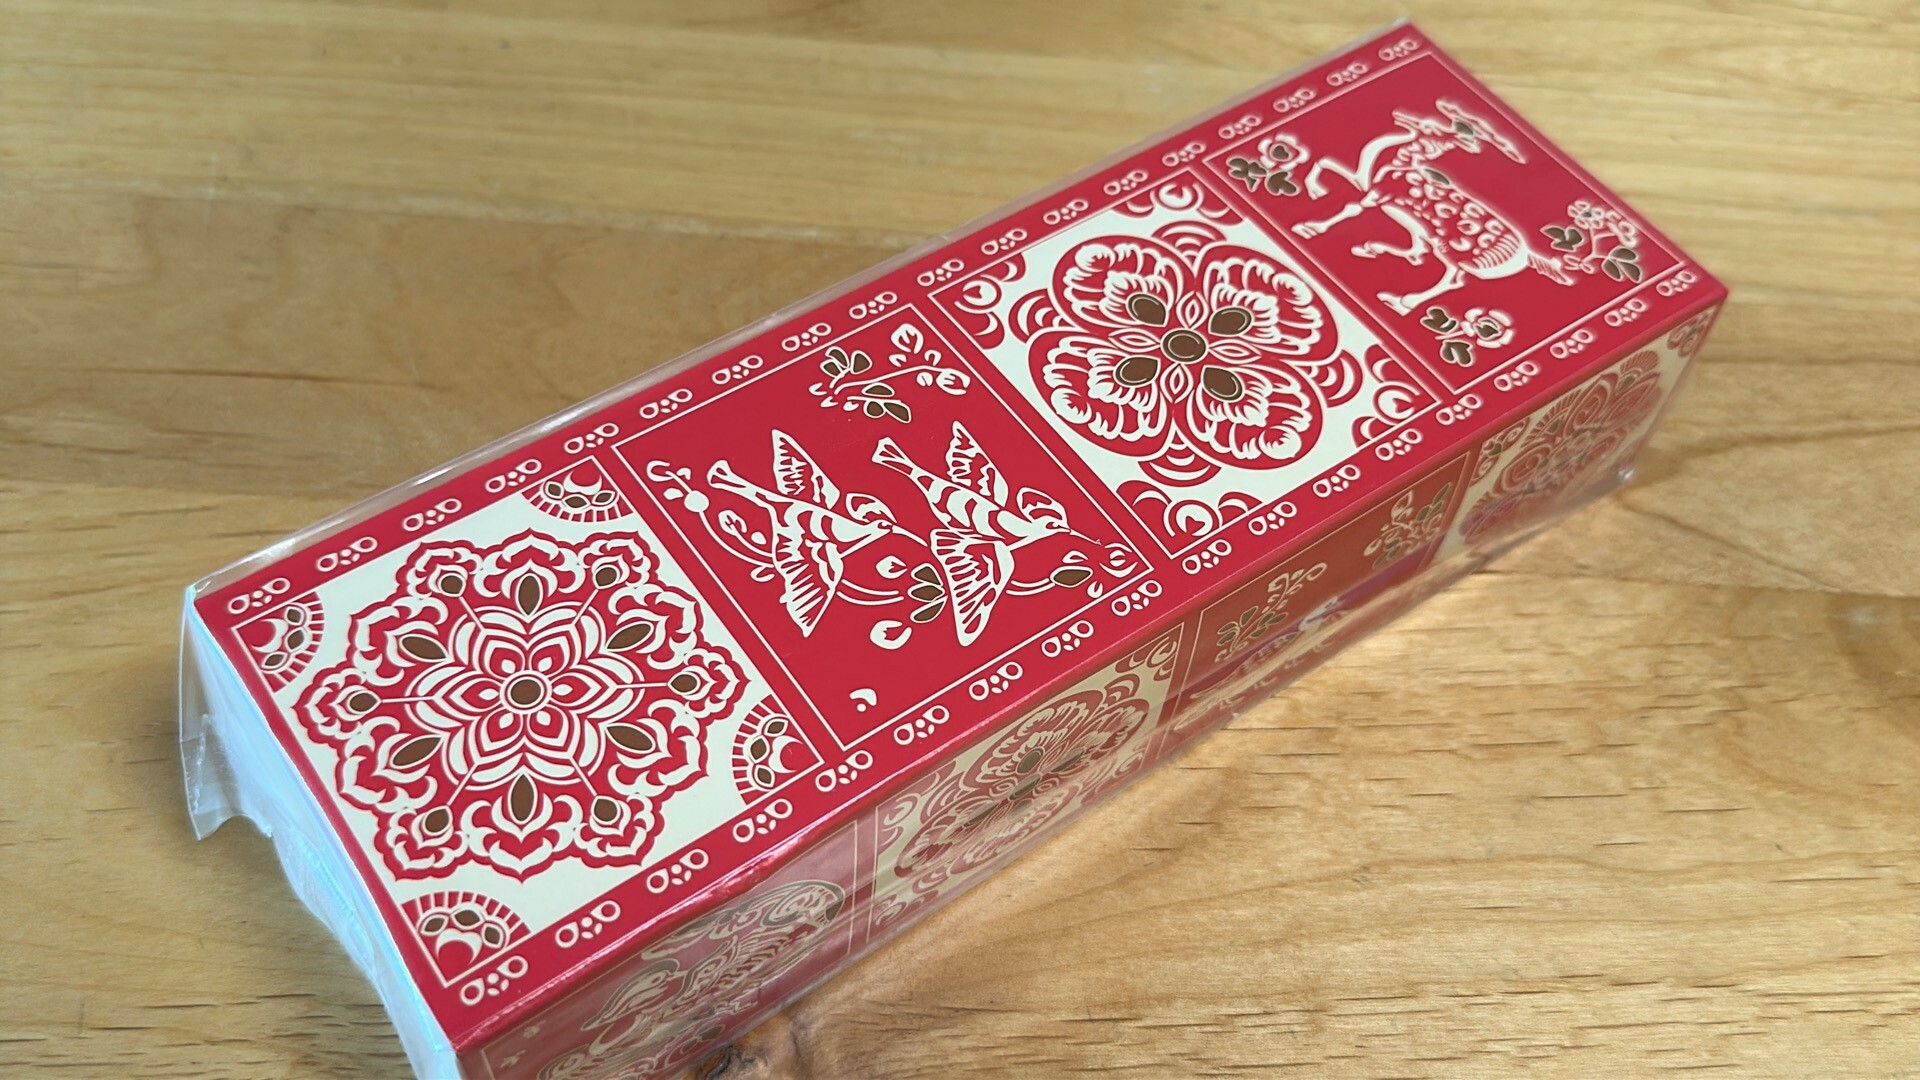 オリエンタルな雰囲気の菊乃寿の箱